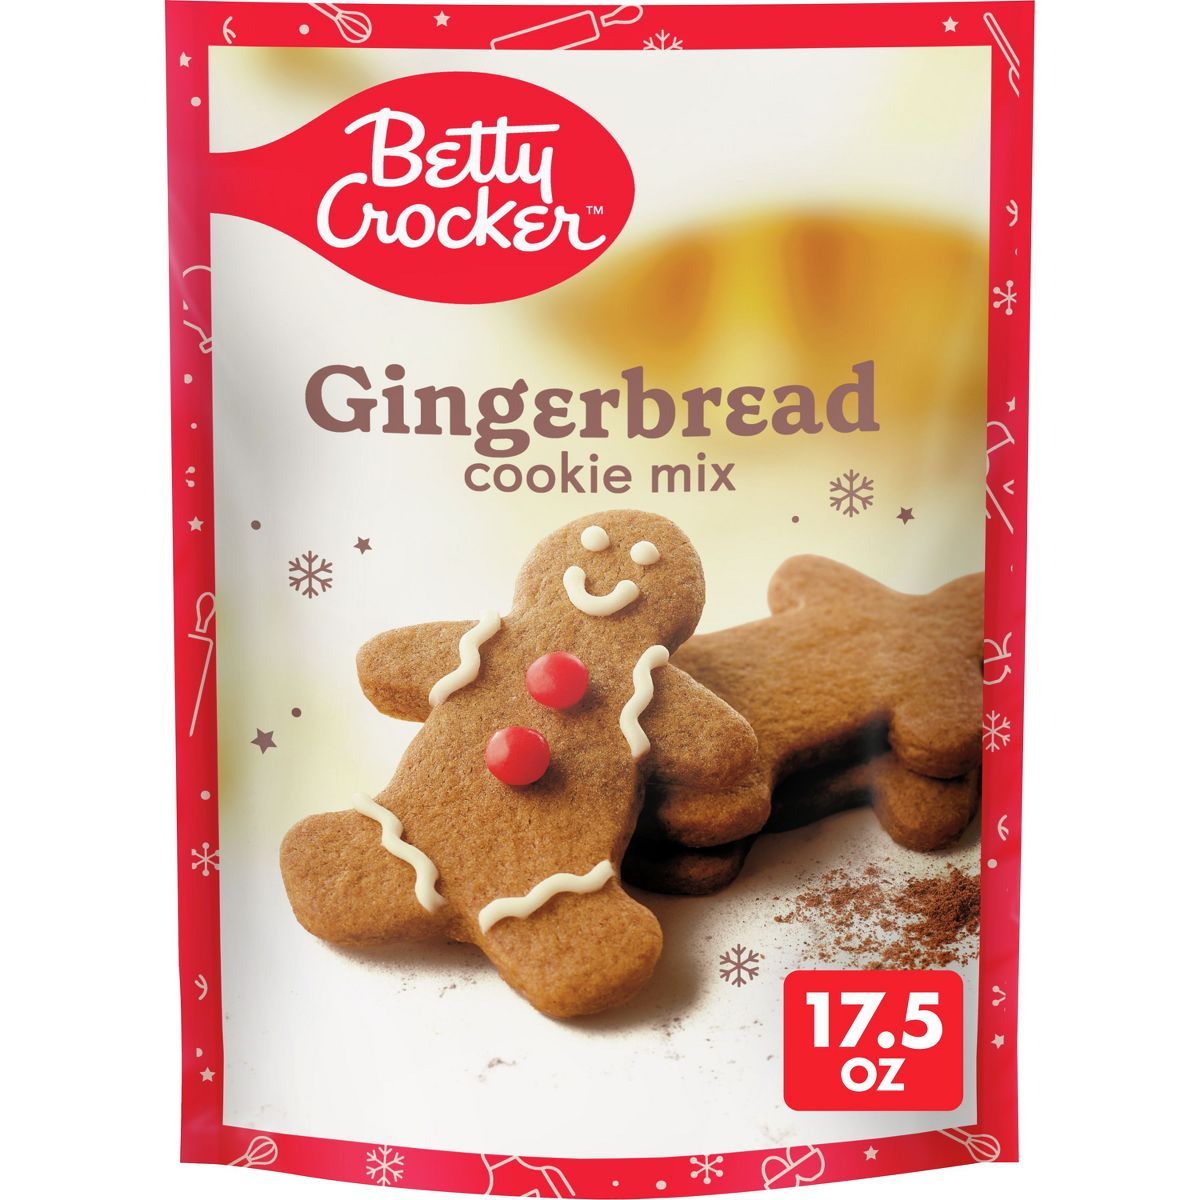 Betty Crocker Gingerbread Cookie Mix - 17.5oz | Target